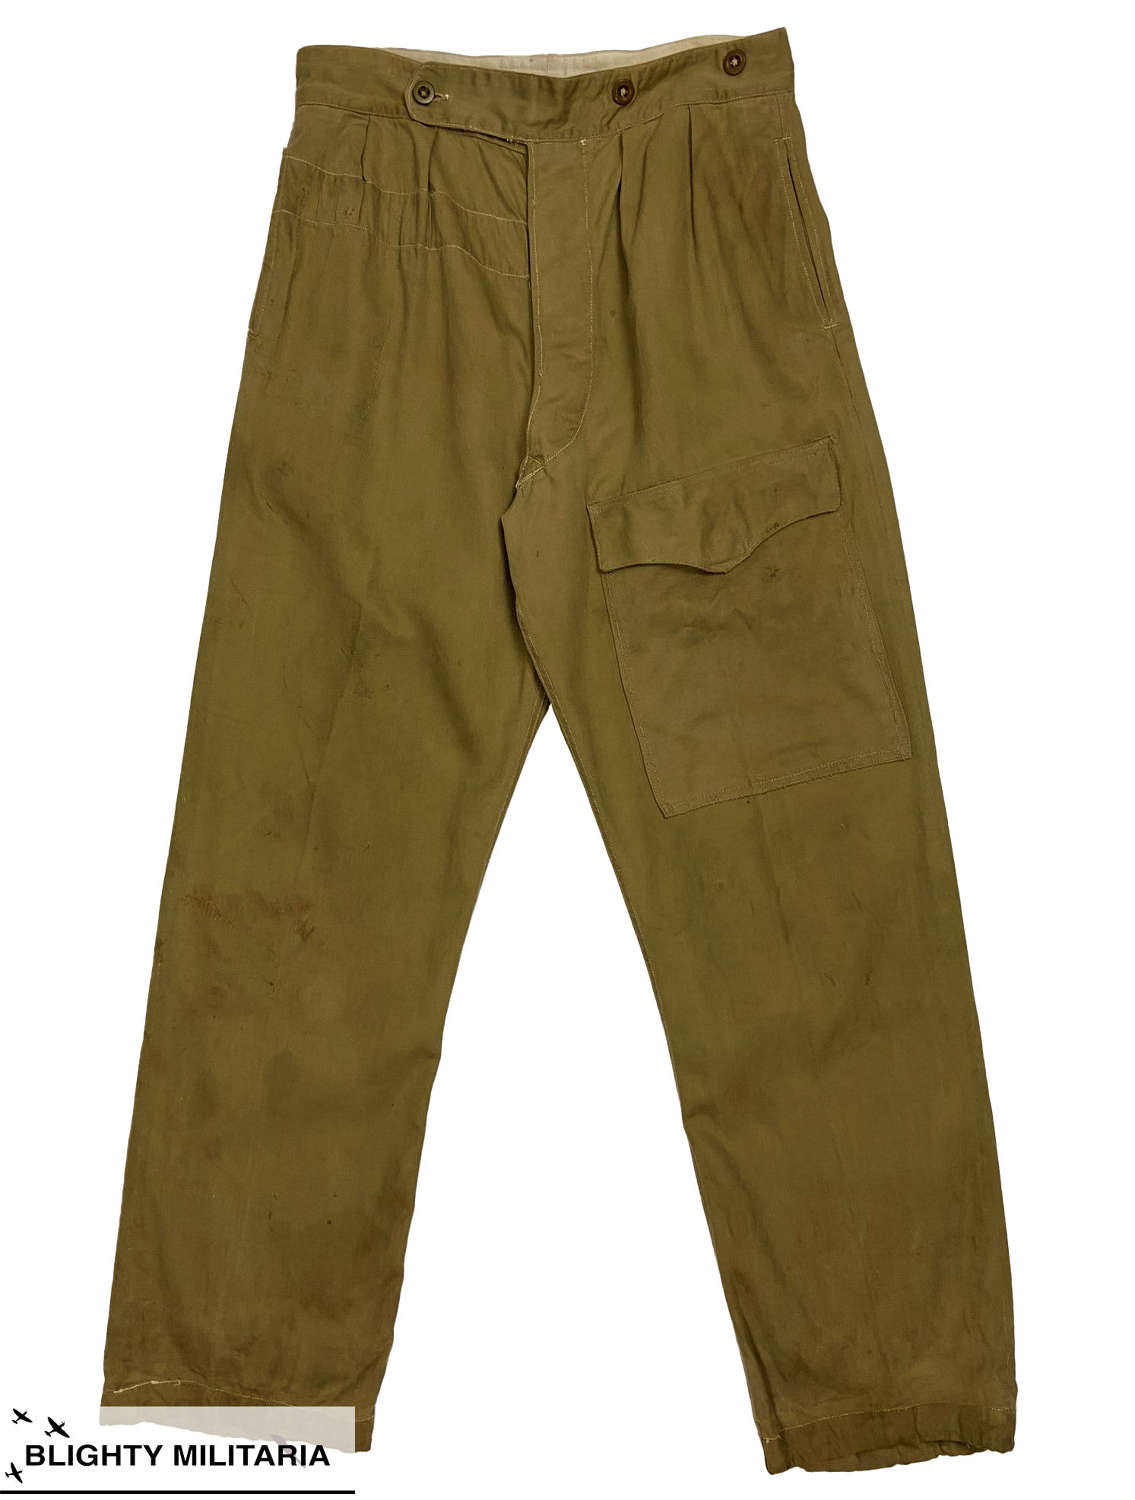 Original 1951 Dated 1942 Pattern Khaki Drill Trousers - Size 10